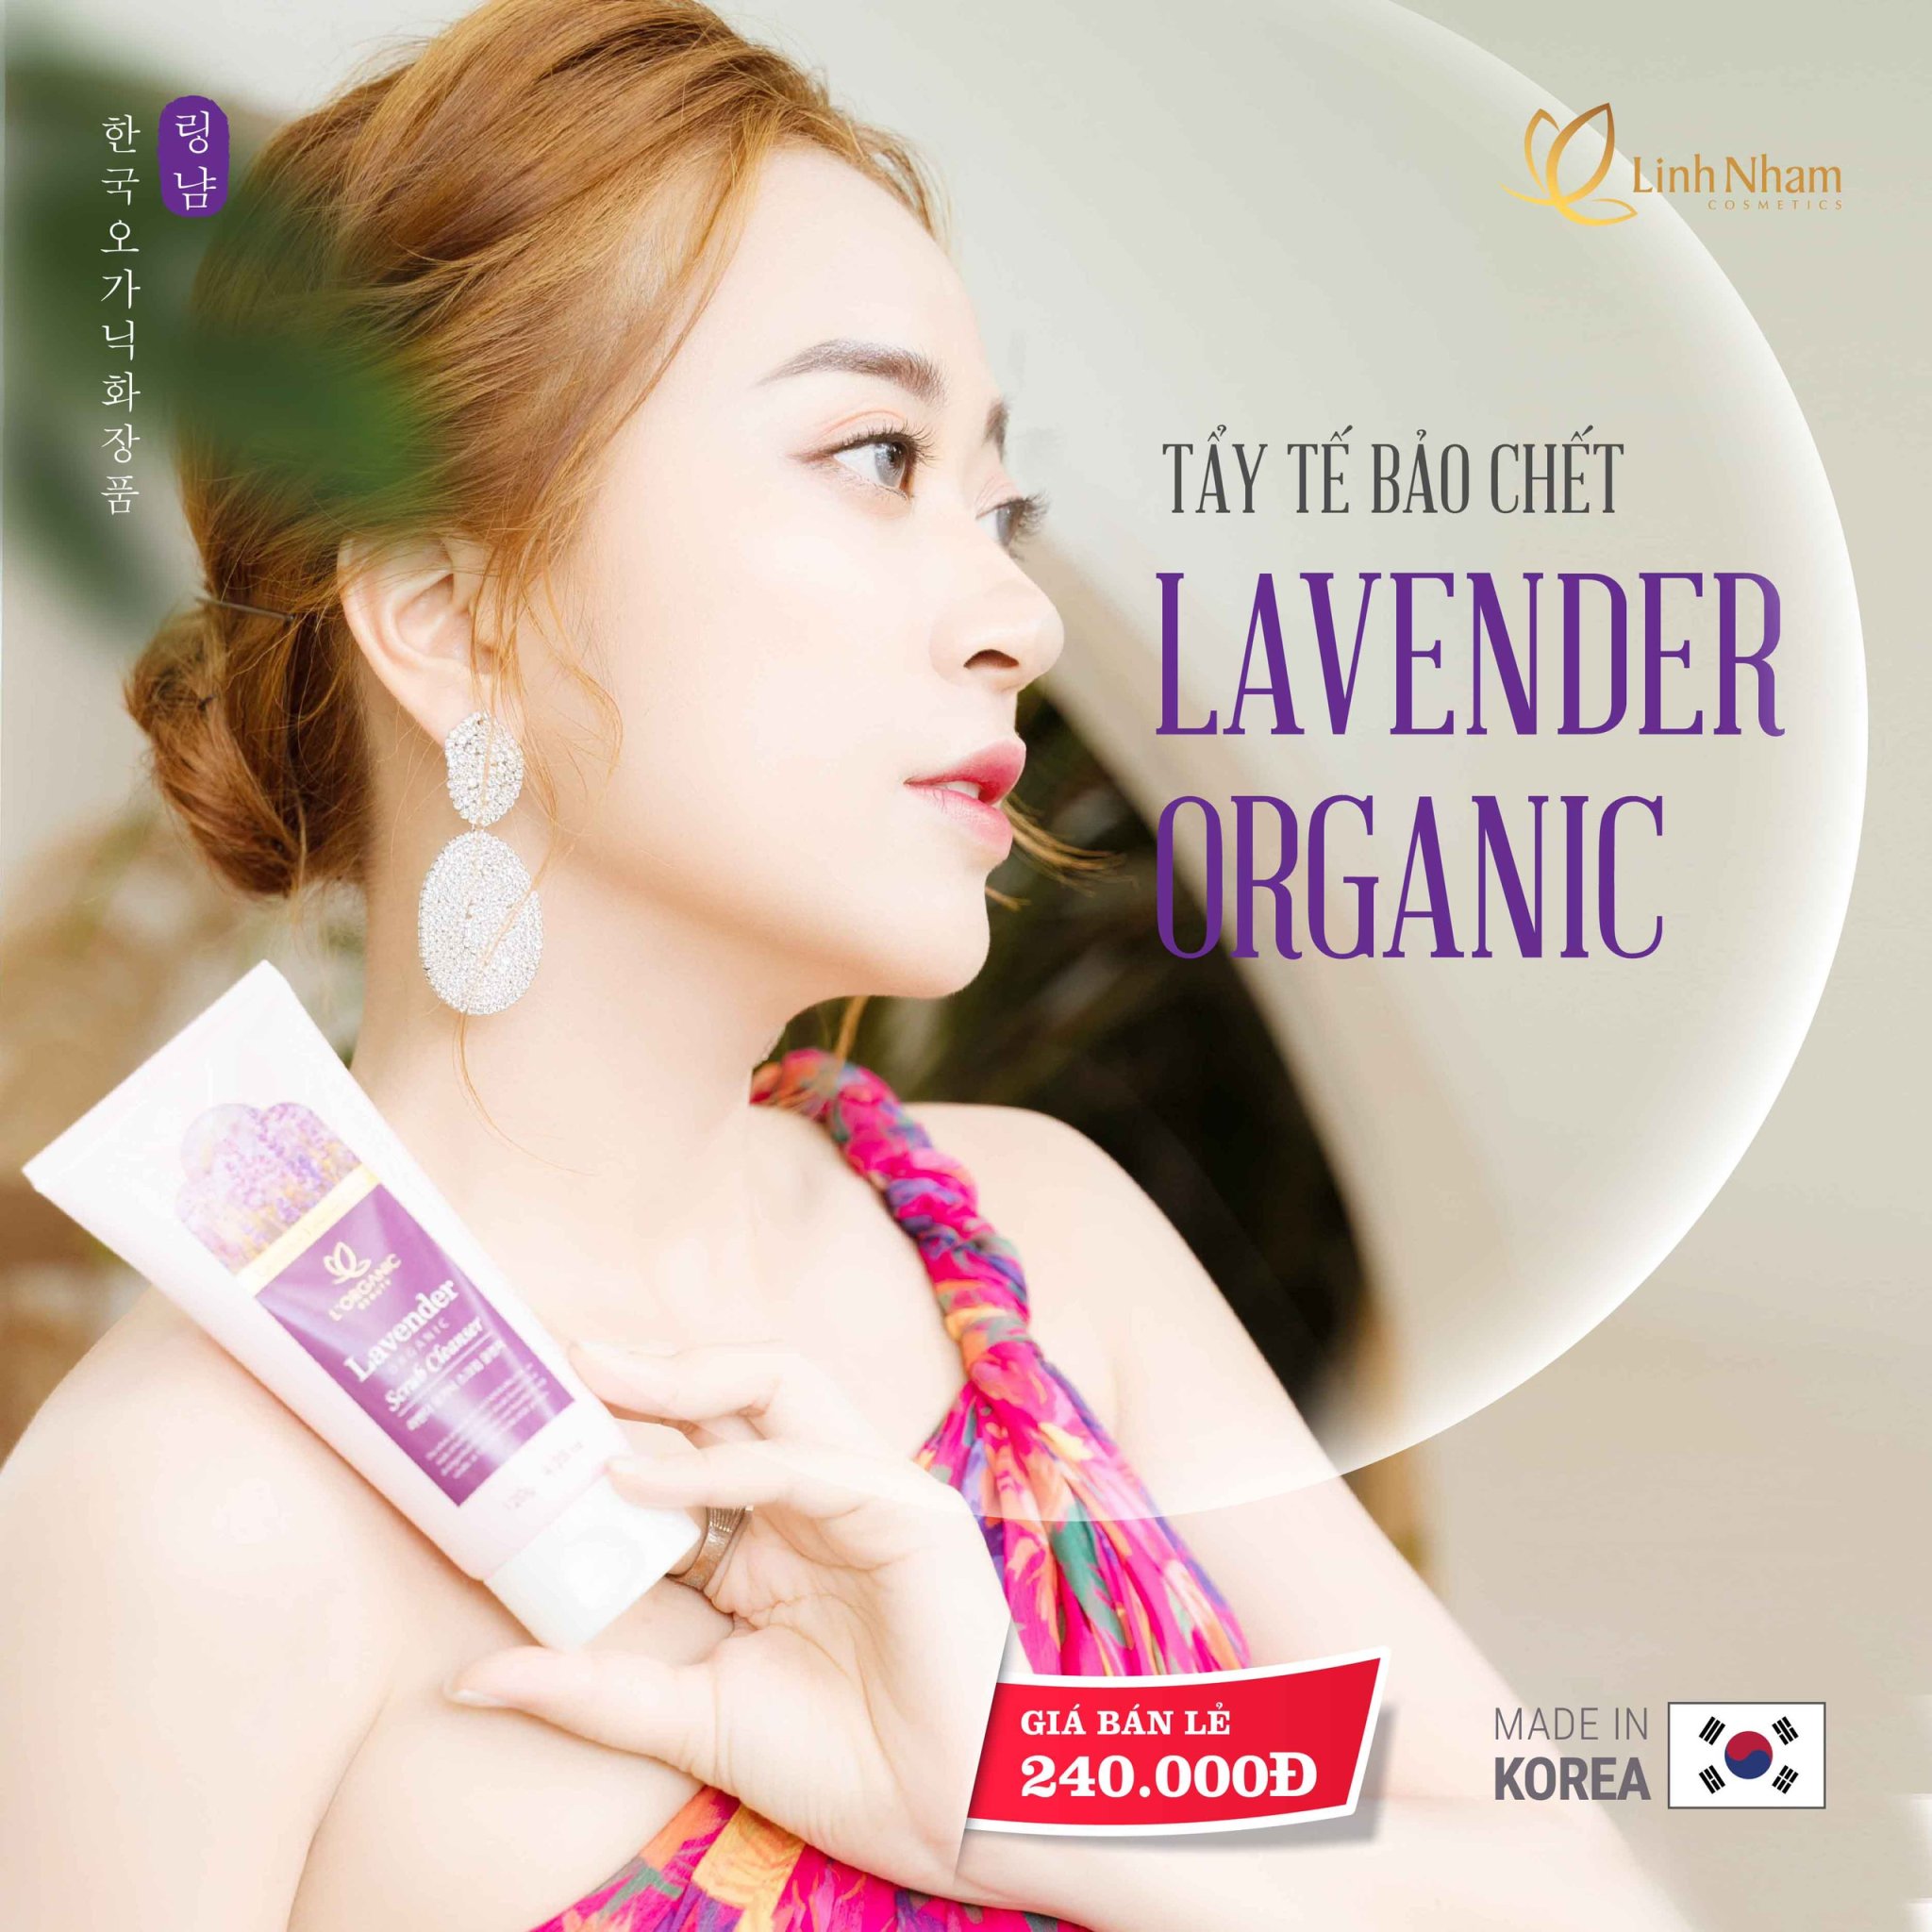 Gel Tẩy Tế Bào Chết Lavender Organic Linh Nhâm (LAVENDER ORGANIC SCRUB CLEANSER) 120g, Giảm Mụn Trứng Cá, Không làm Khô Da